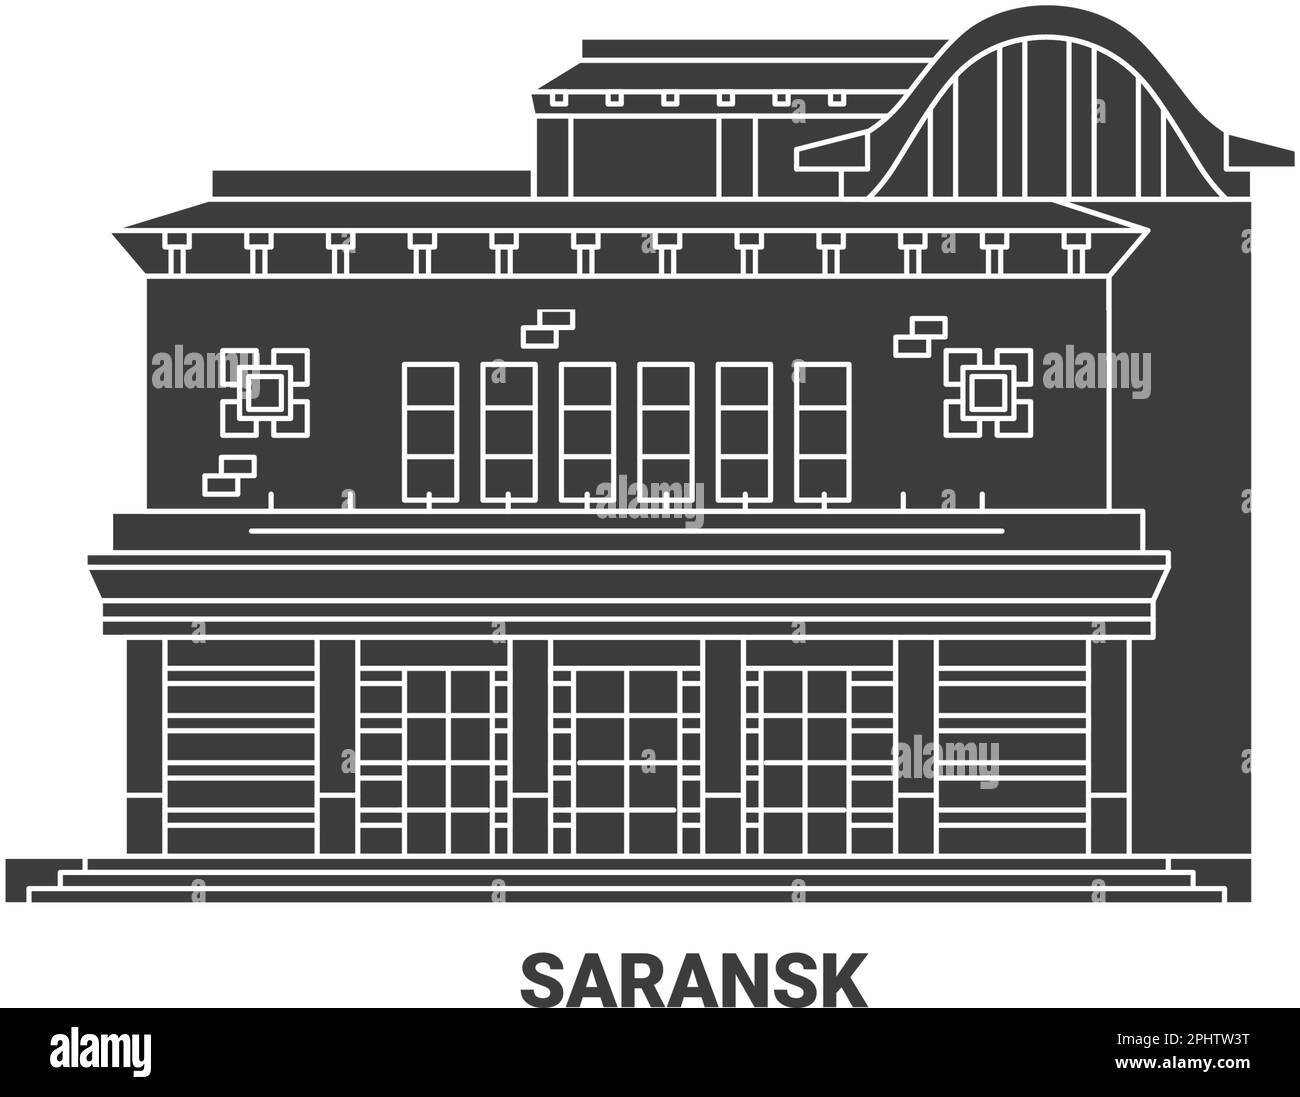 Russia, Saransk travel landmark vector illustration Stock Vector